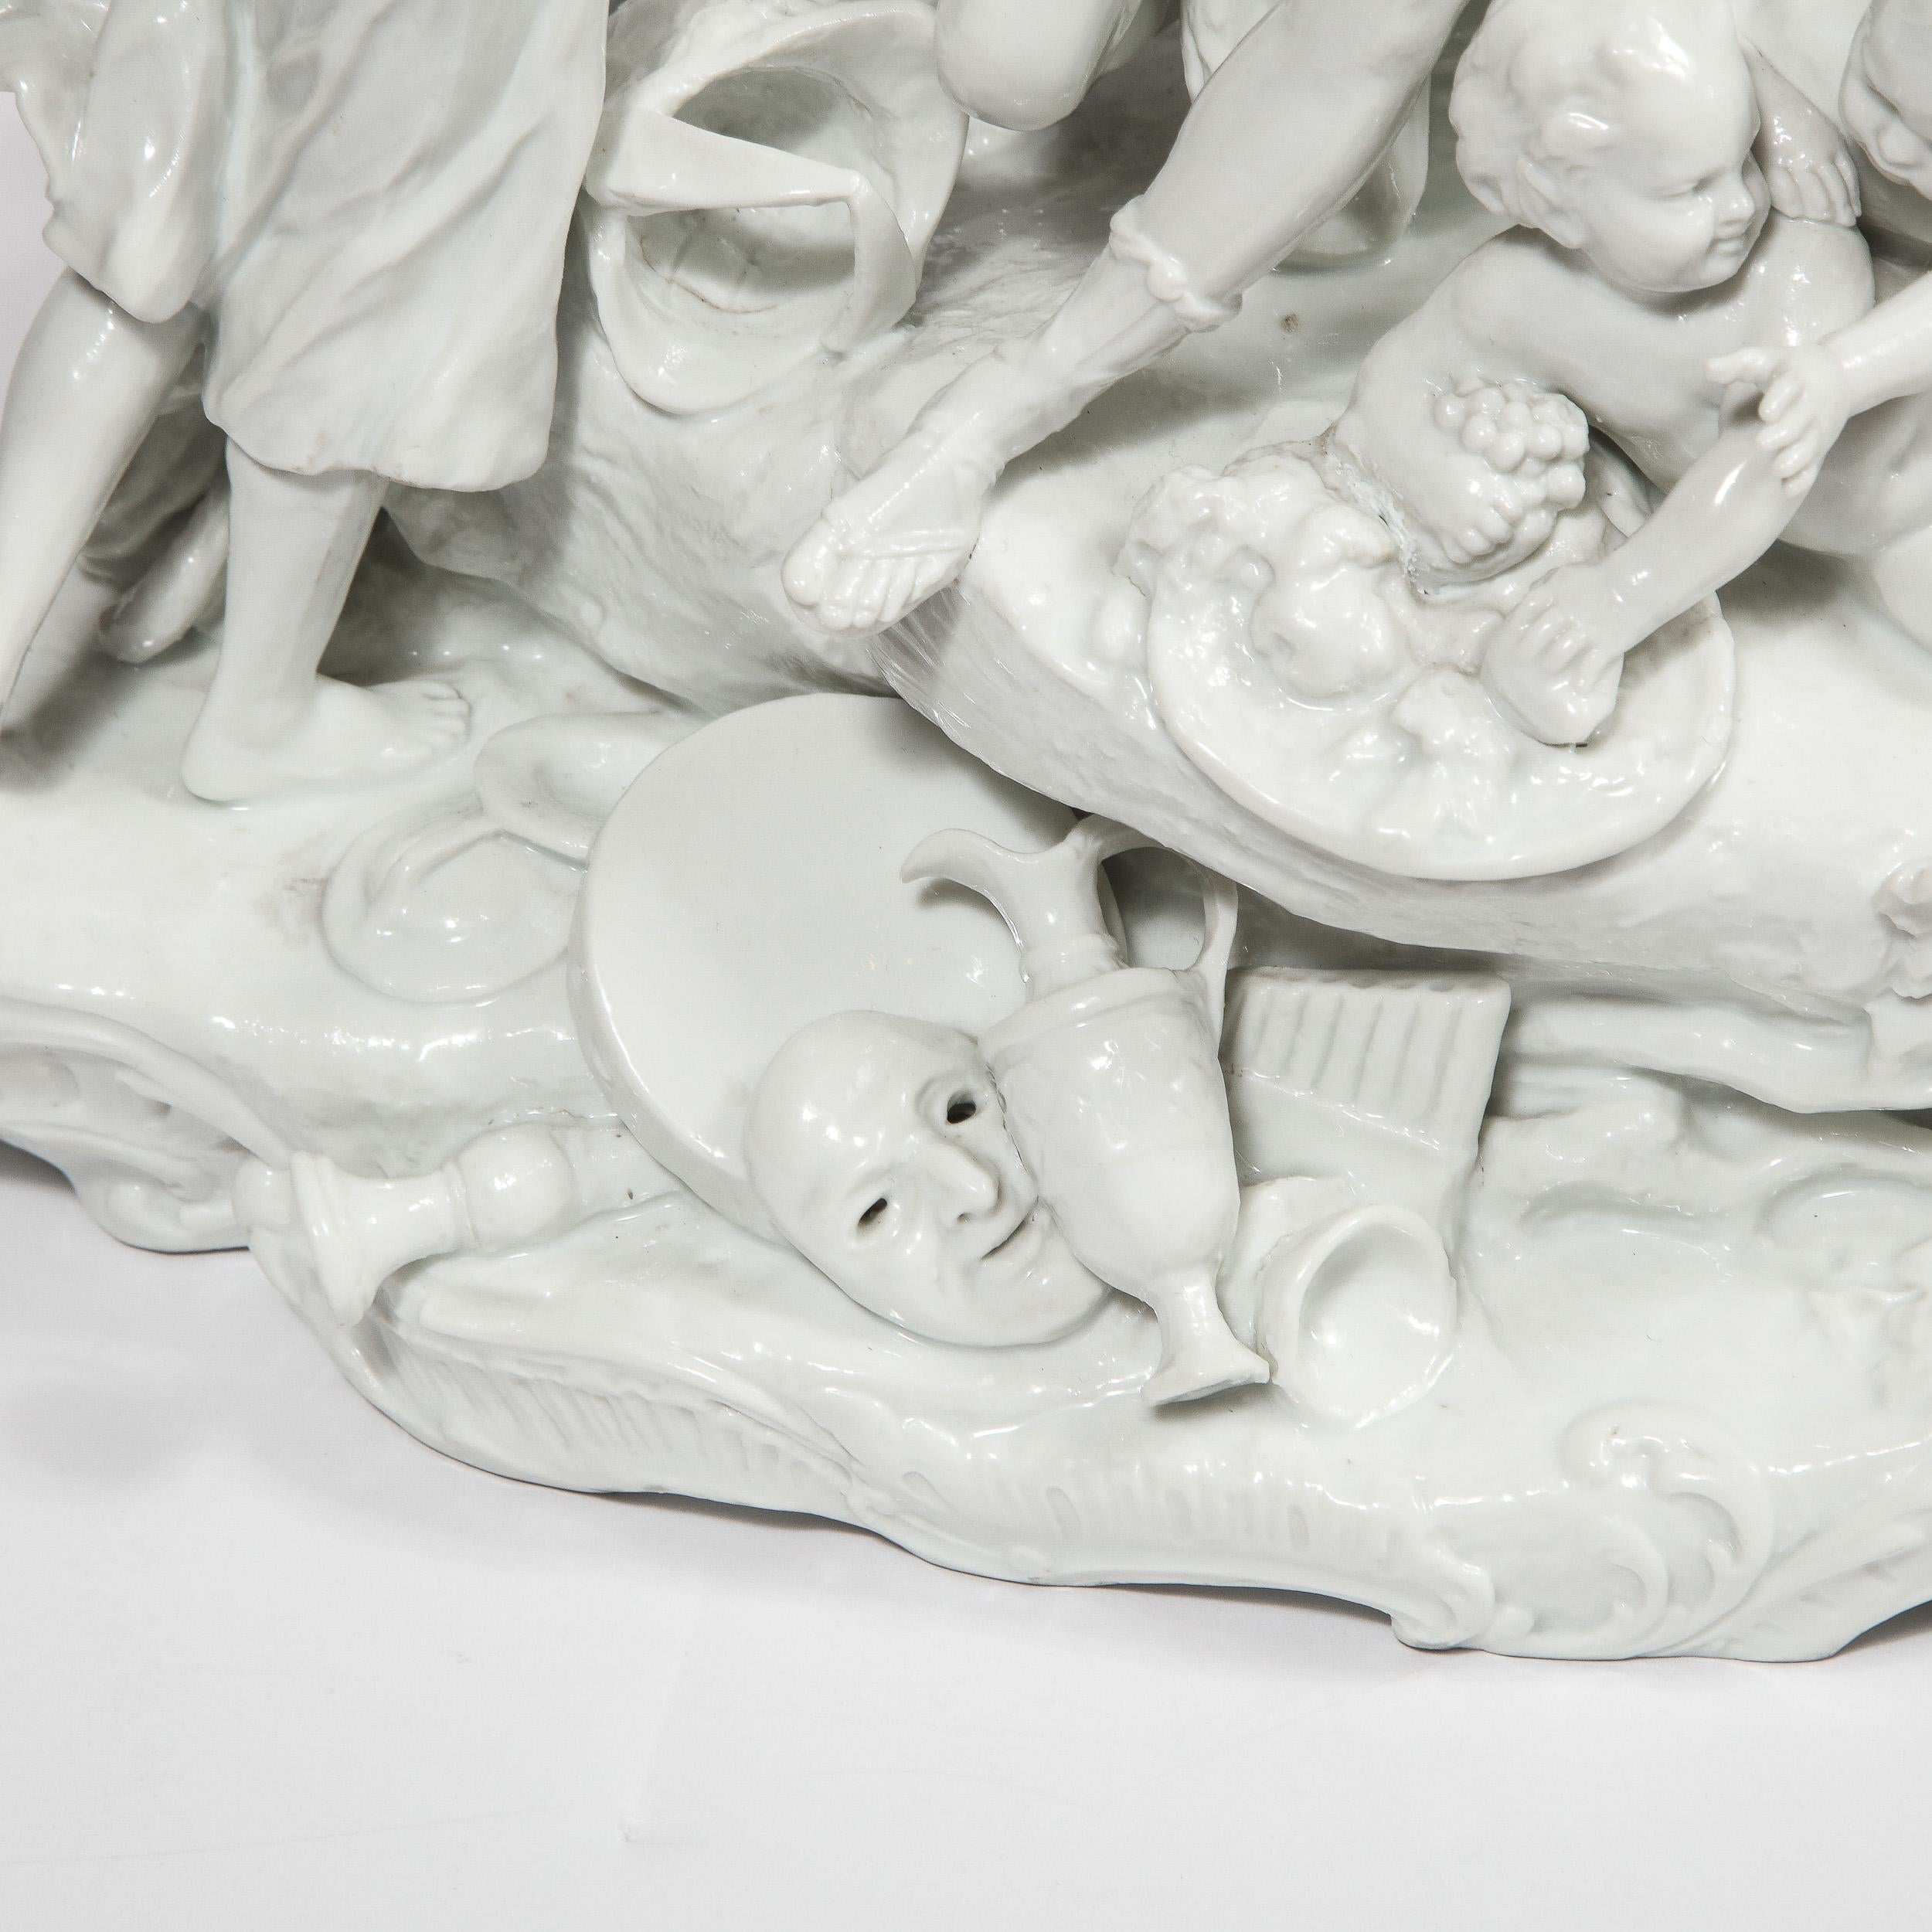 Cette sculpture néoclassique moderniste et raffinée a été réalisée en Allemagne. La pièce représente une bacchanale avec des déesses grecques, de jeunes enfants chérubins et même un ours, le tout exécuté en fine porcelaine blanche. Avec son